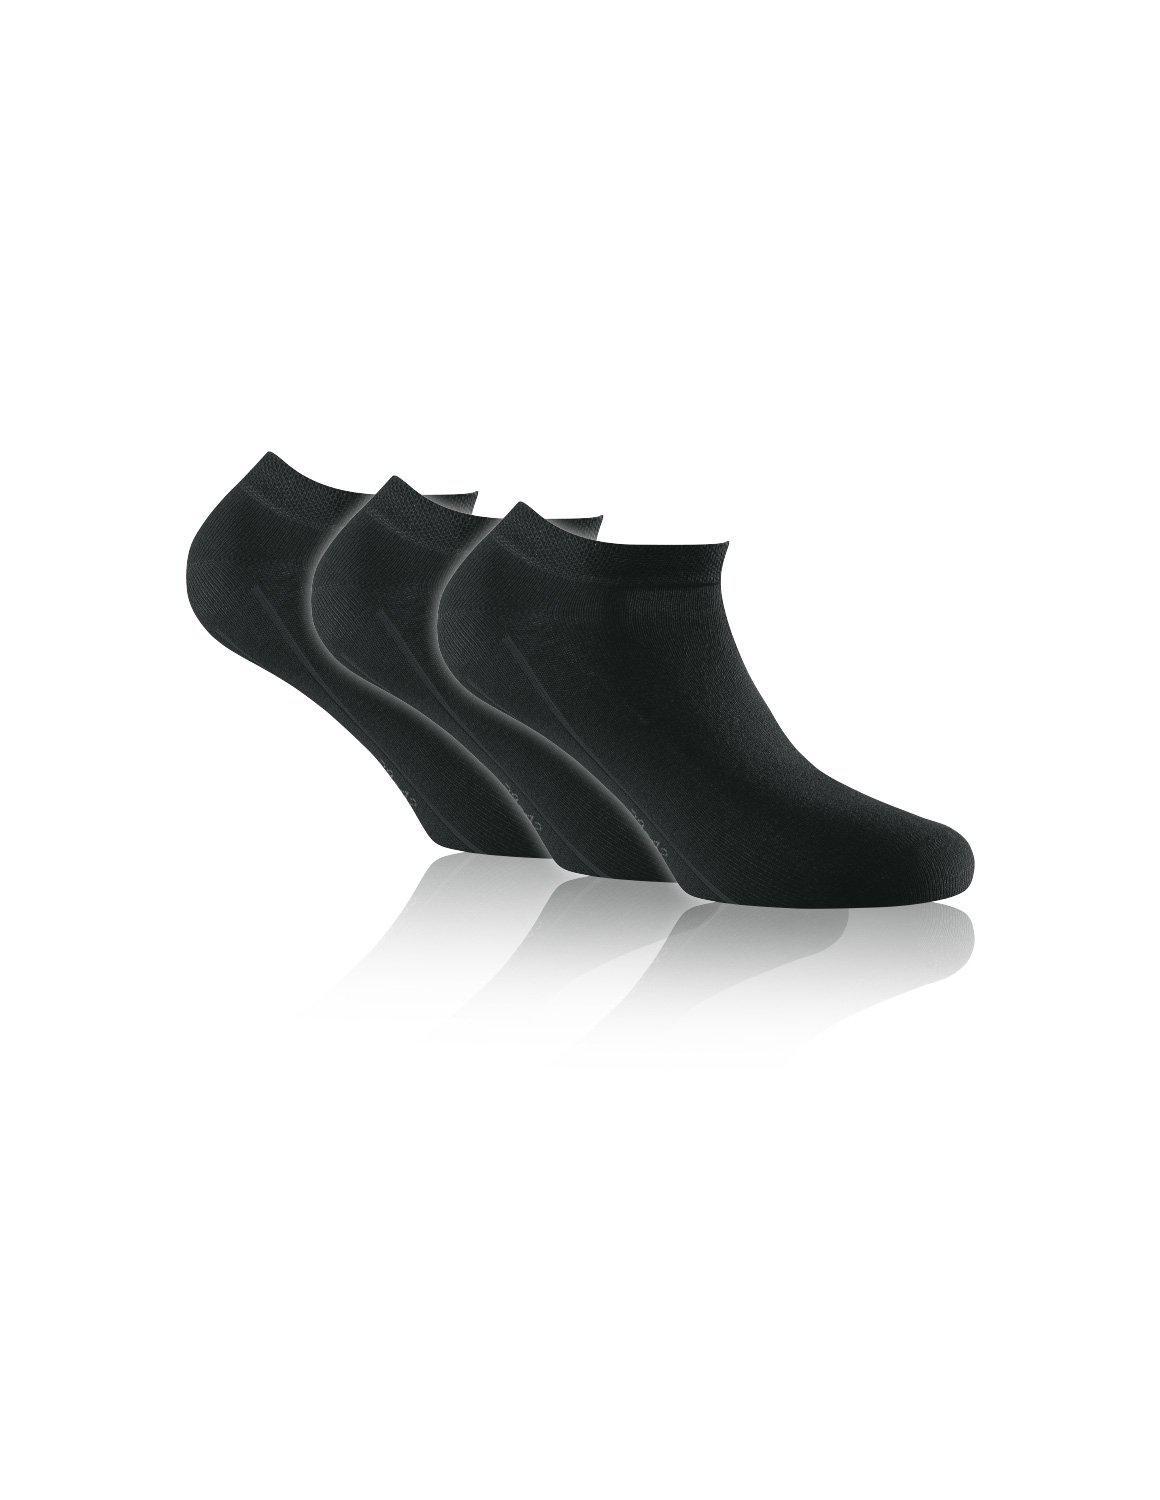 Socquettes Sneaker ROHNER - 3 paires